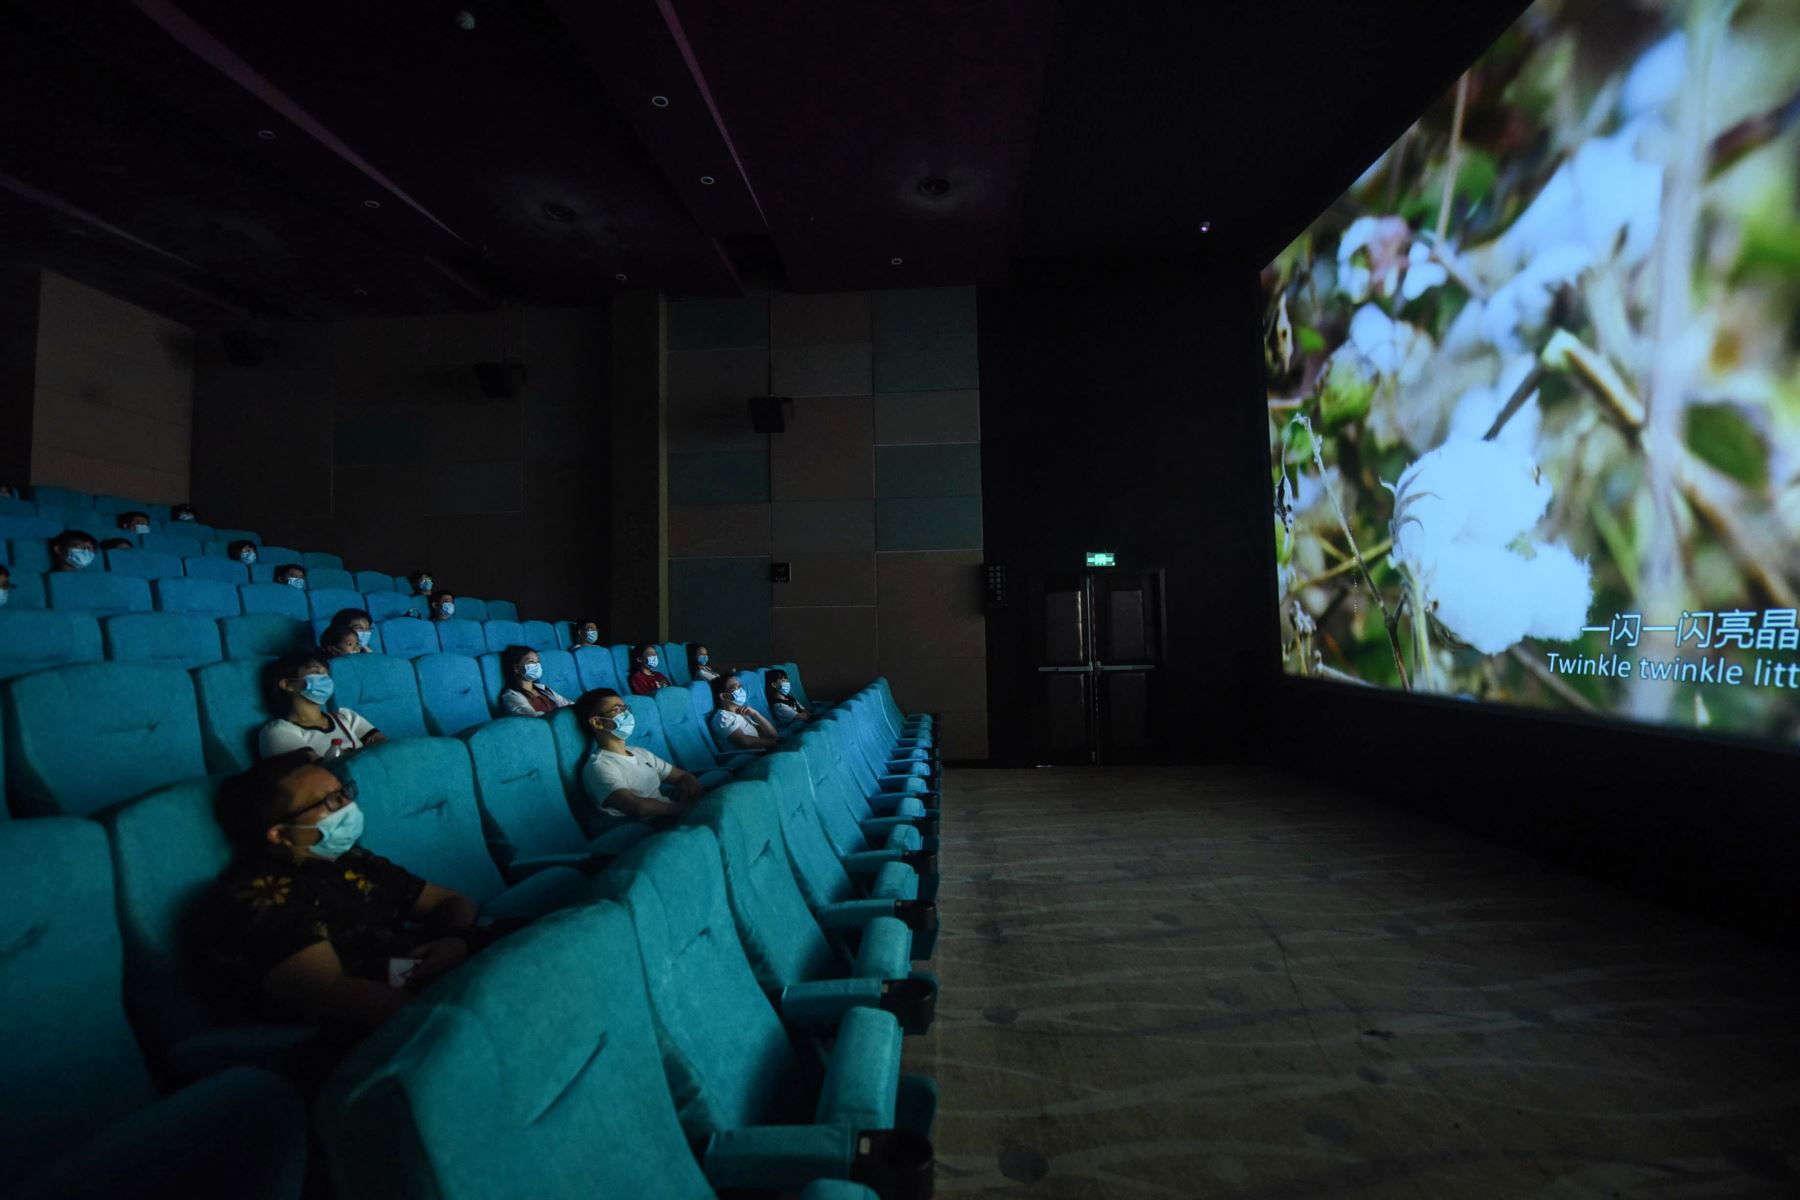 La gente mira una película mientras se sientan por separado para el distanciamiento social en un cine en Hangzhou, en la provincia oriental china de Zhejiang.
Foto: AFP